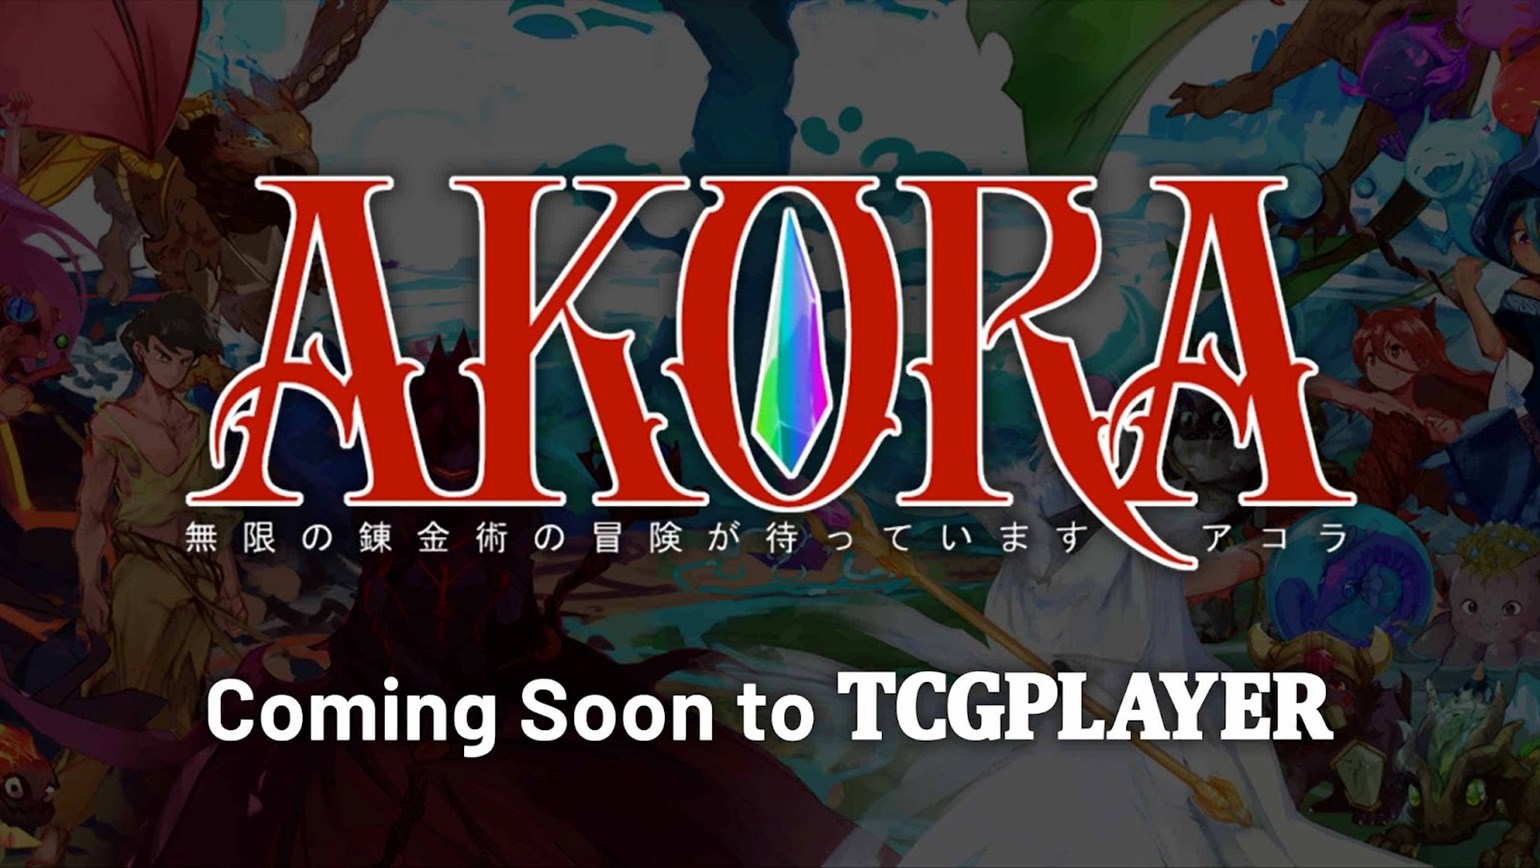 Coming Soon to TCGplayer: Akora